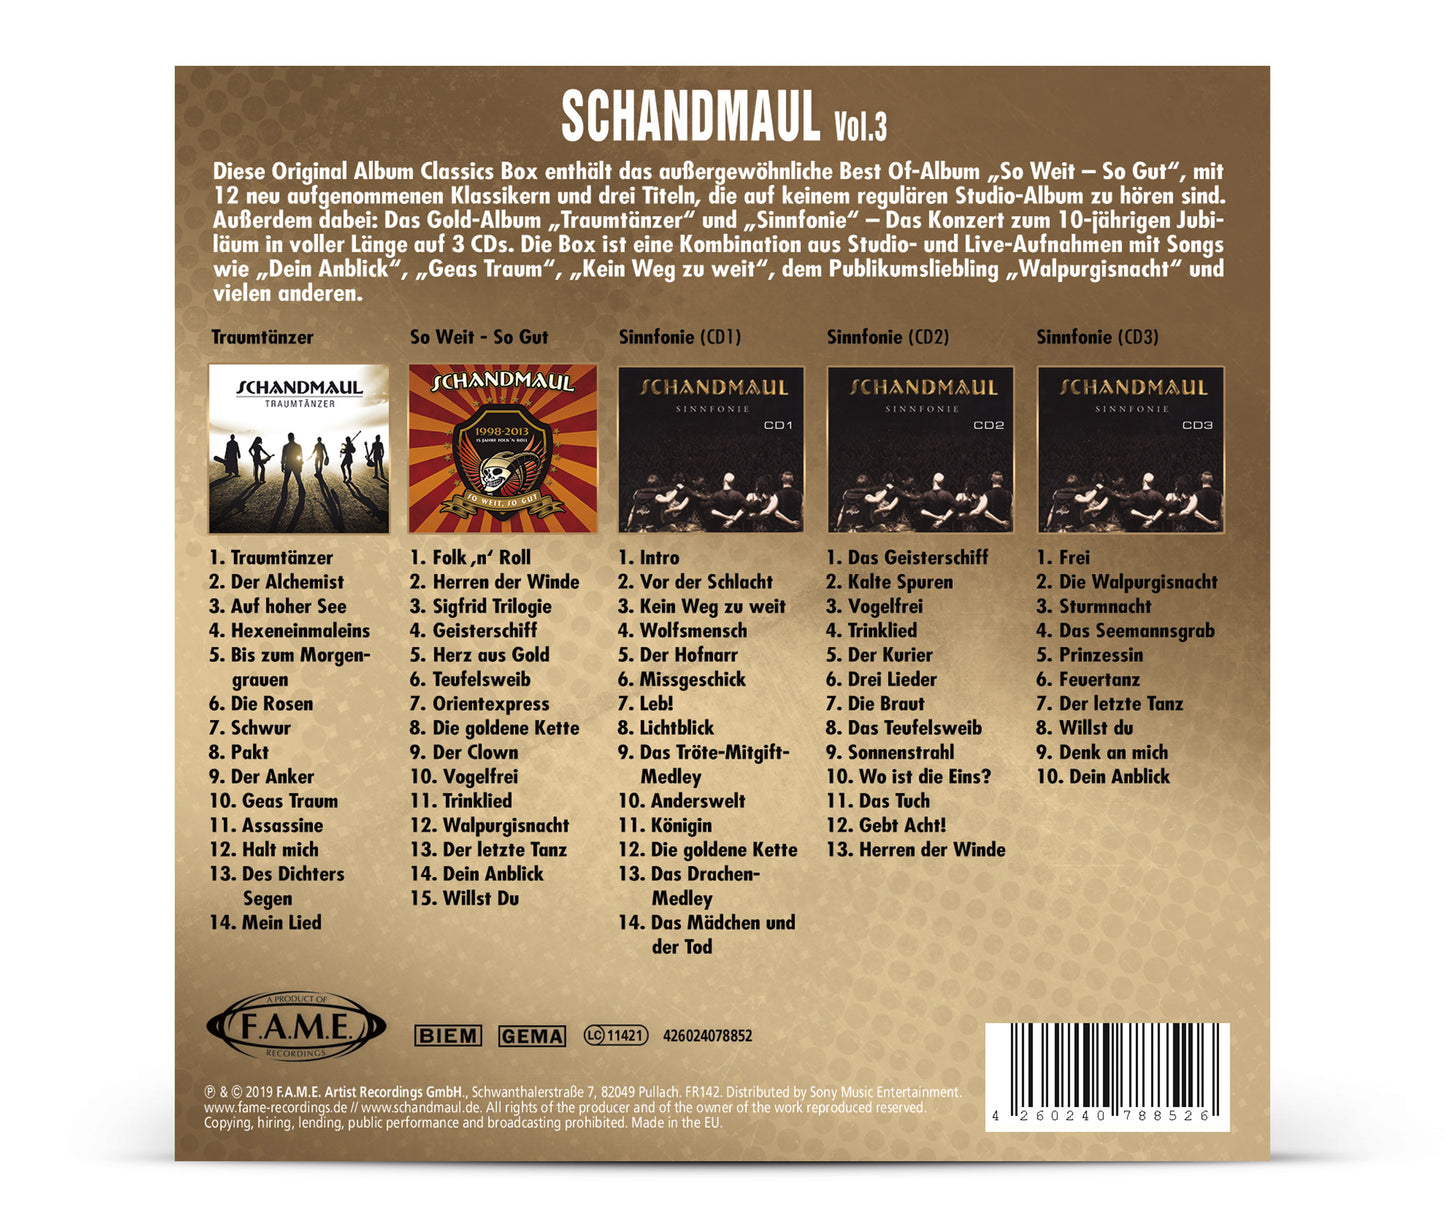 SCHANDMAUL - Original Album Classics Vol. 3 Box-Set